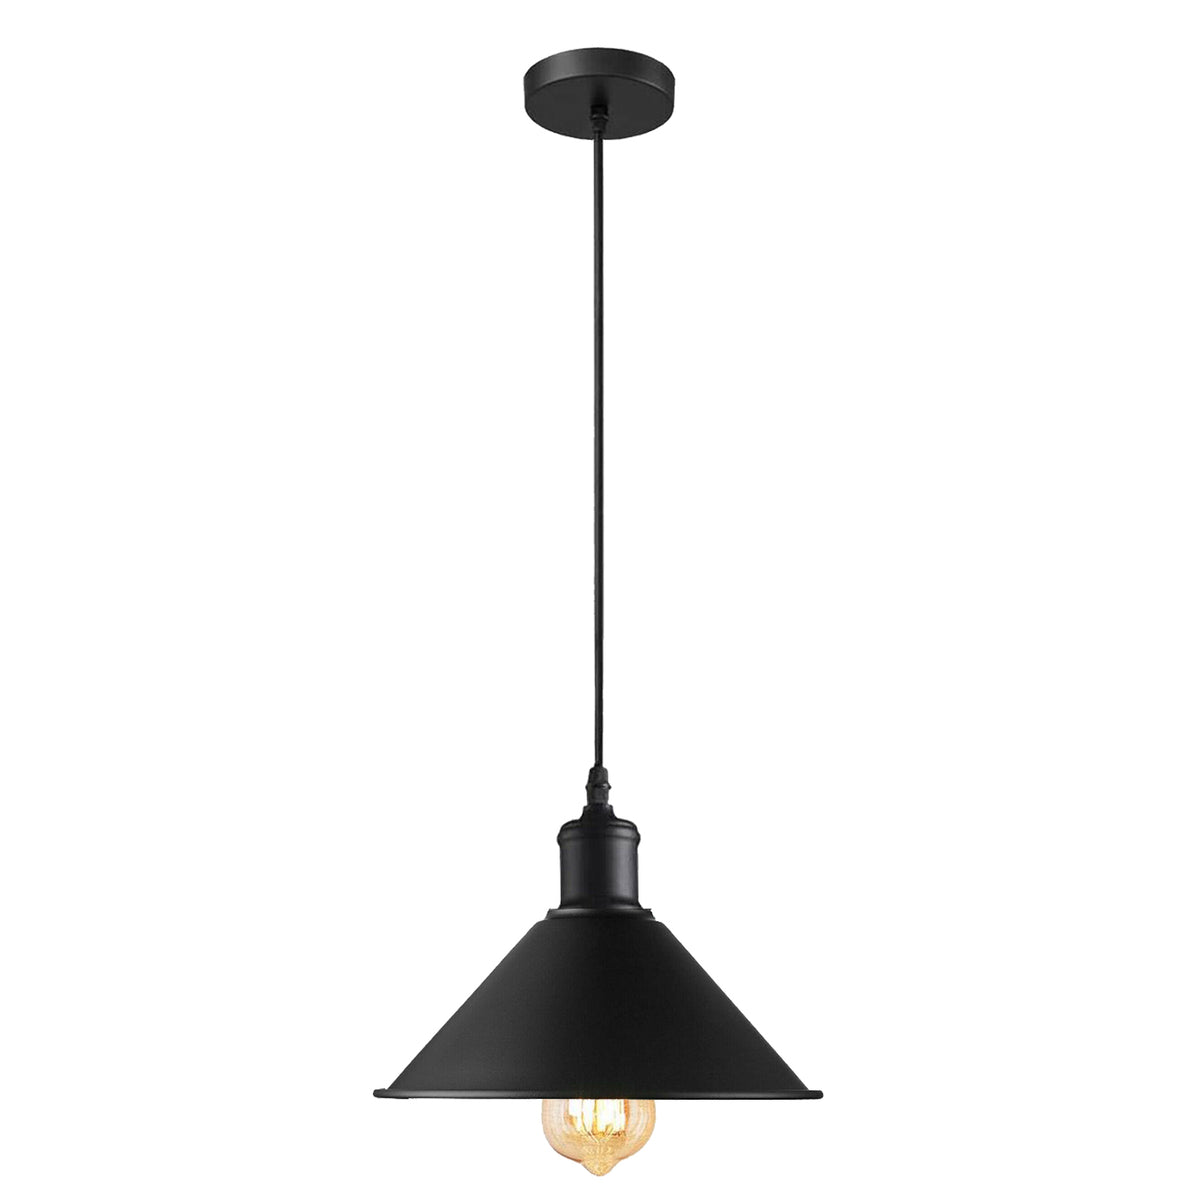 Deckenlampe Loft Hängeleuchte Küchenlampe Retro Lampe Industrie Hängelampe 